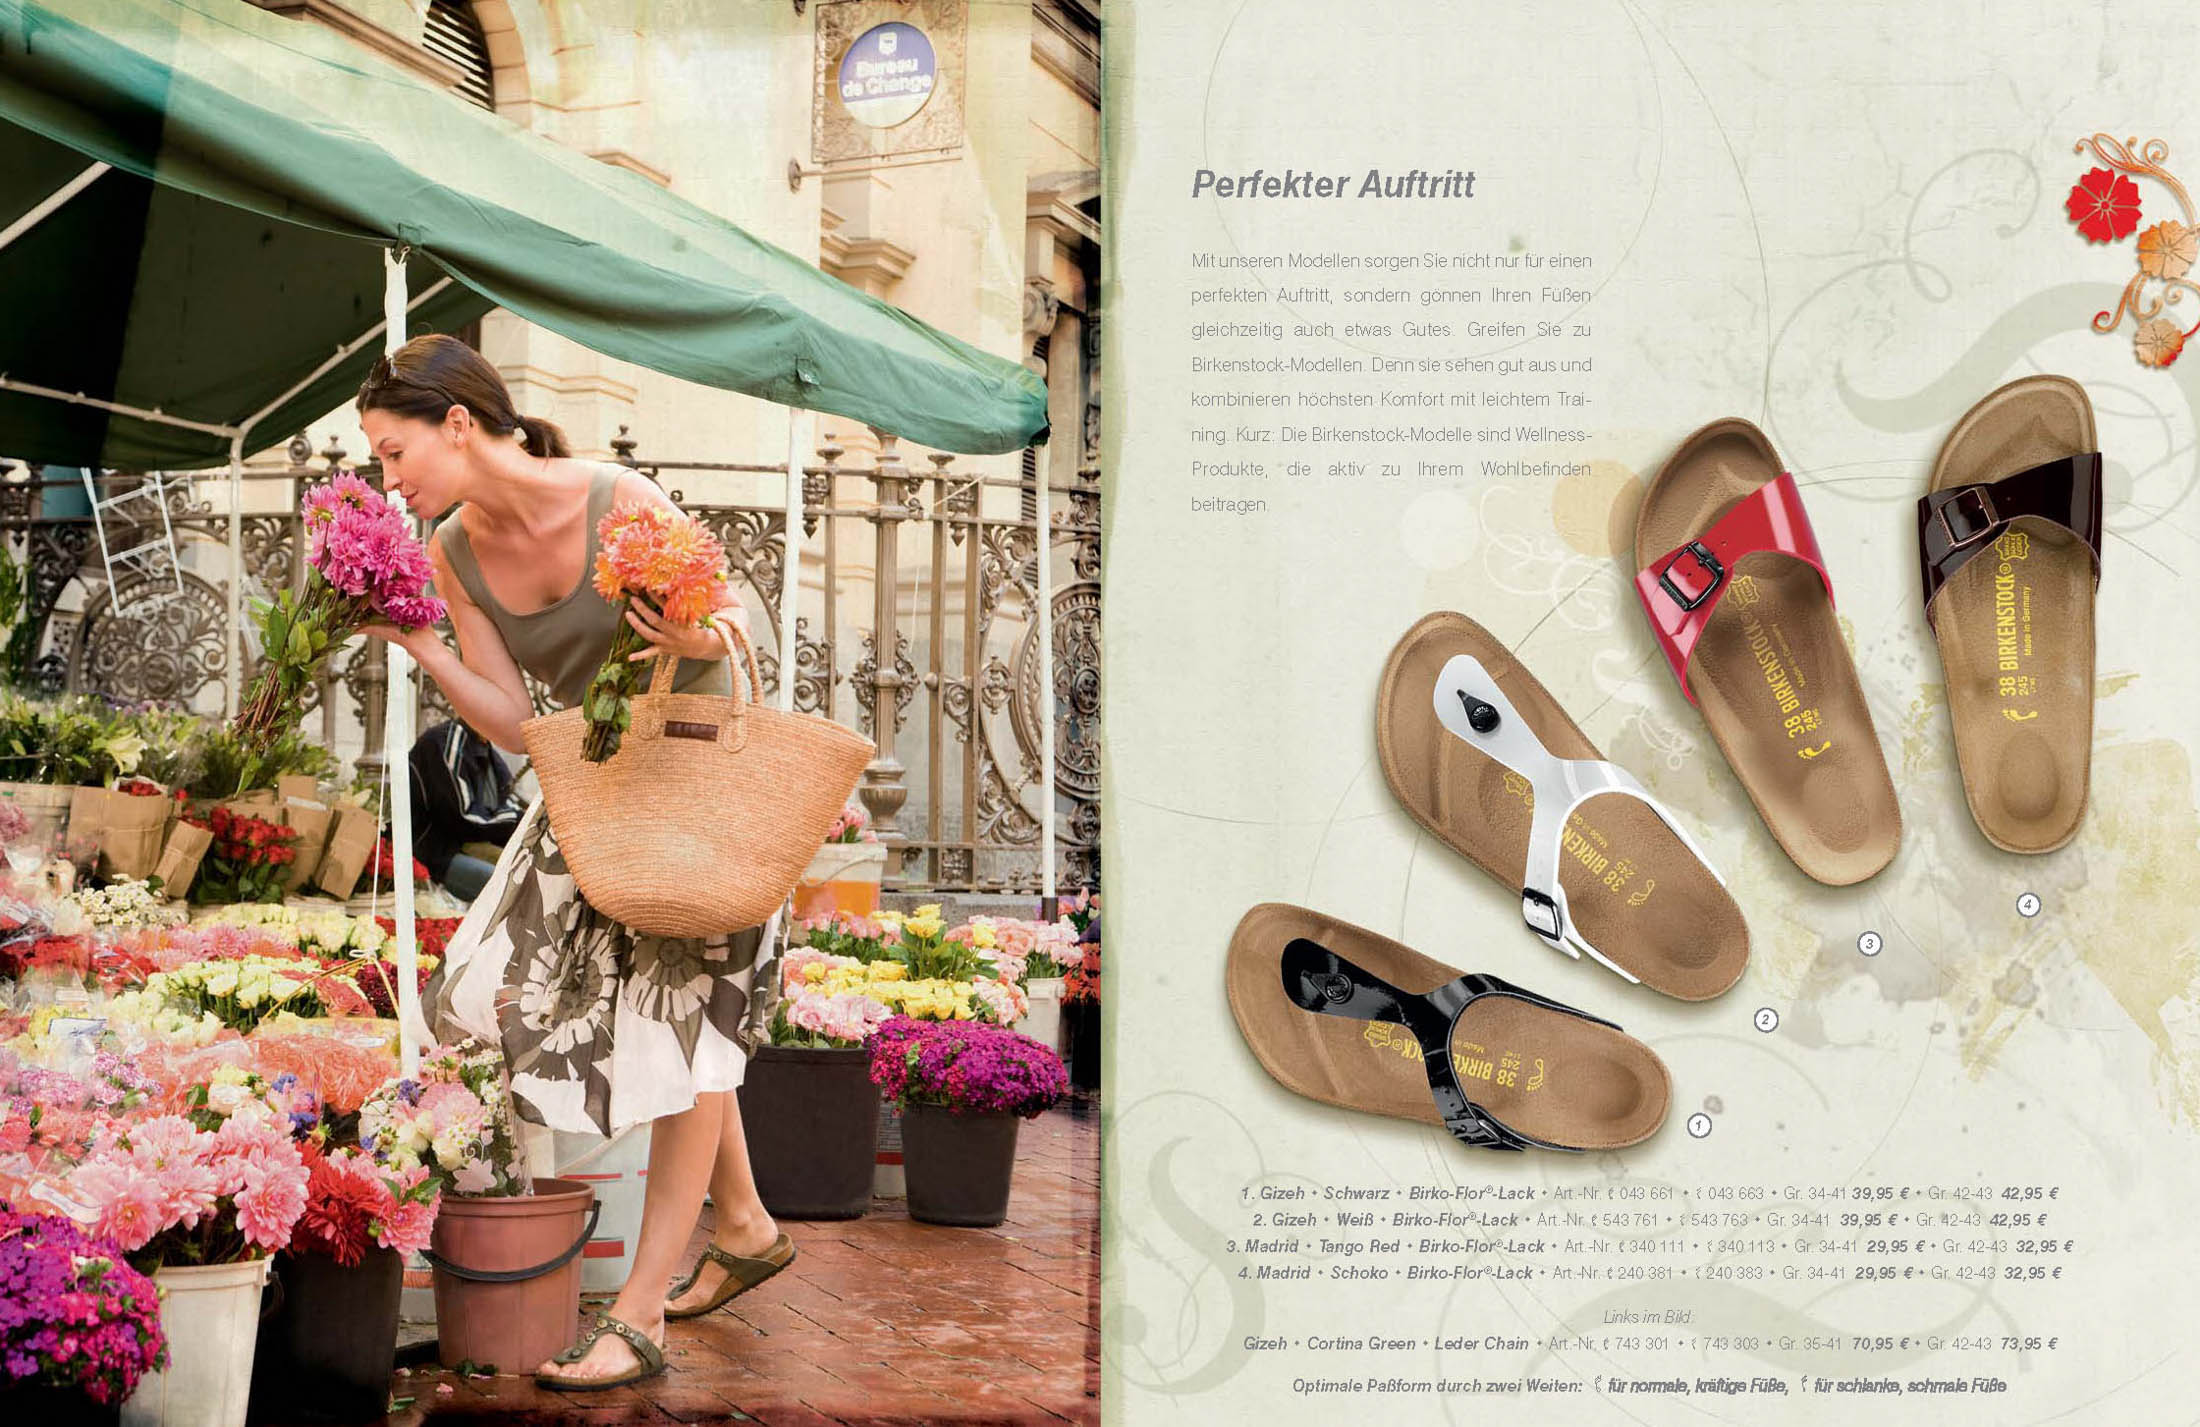 Eine Frau in einem geblümten Kleid und Sandalen beim Einkaufen auf einem geschäftigen Blumenmarkt, trägt einen großen Korb und riecht an Blumen. Daneben steht eine Seite mit verschiedenen Sandalendesigns und Beschreibungen auf Deutsch. © Fotografie Tomas Rodriguez